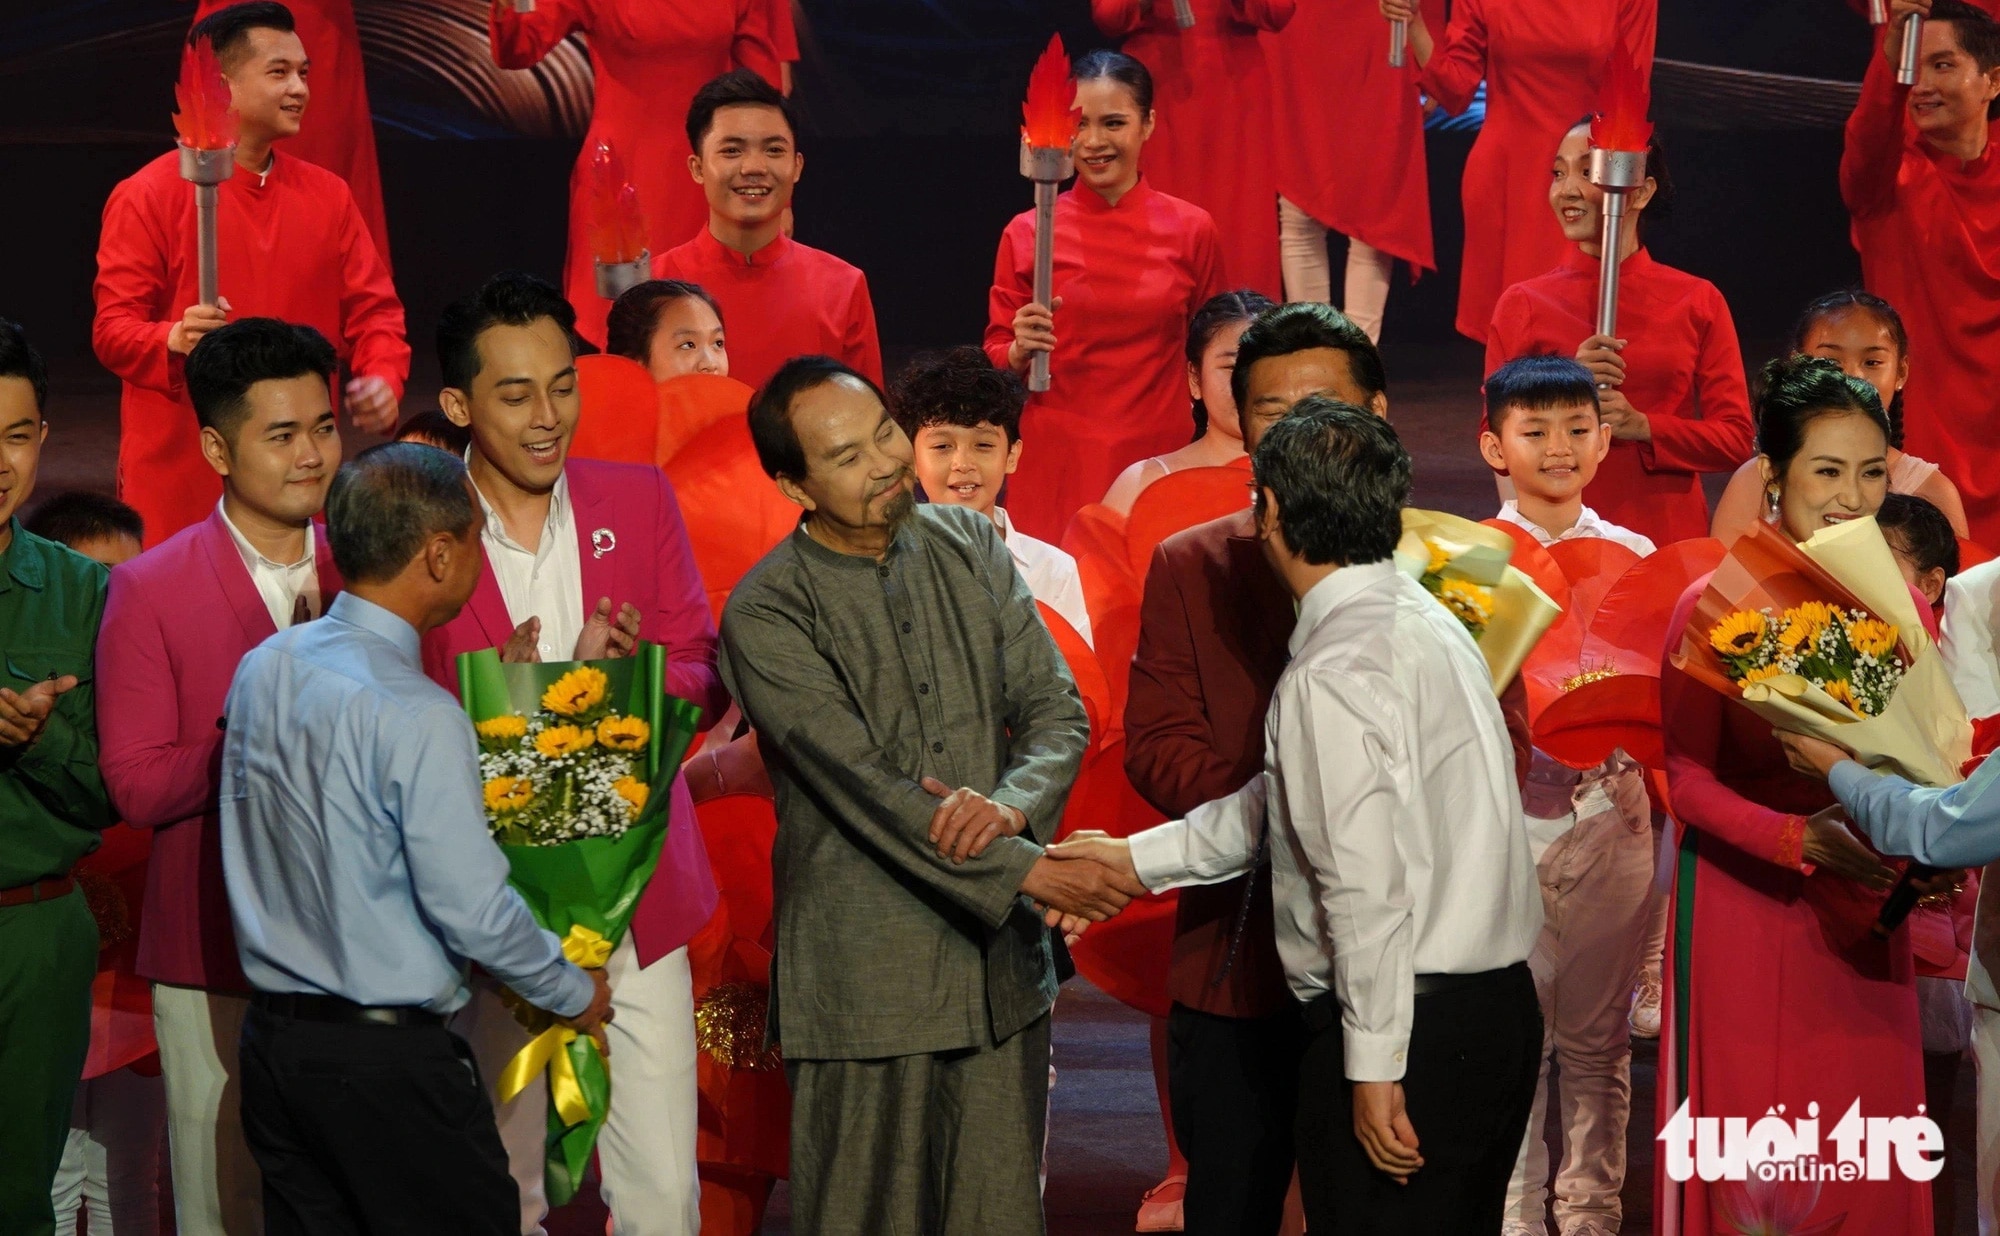 Lãnh đạo thành phố tặng hoa chúc mừng nghệ sĩ Thanh Điền trong vai diễn hình tượng Bác Hồ - Ảnh: T.T.D.